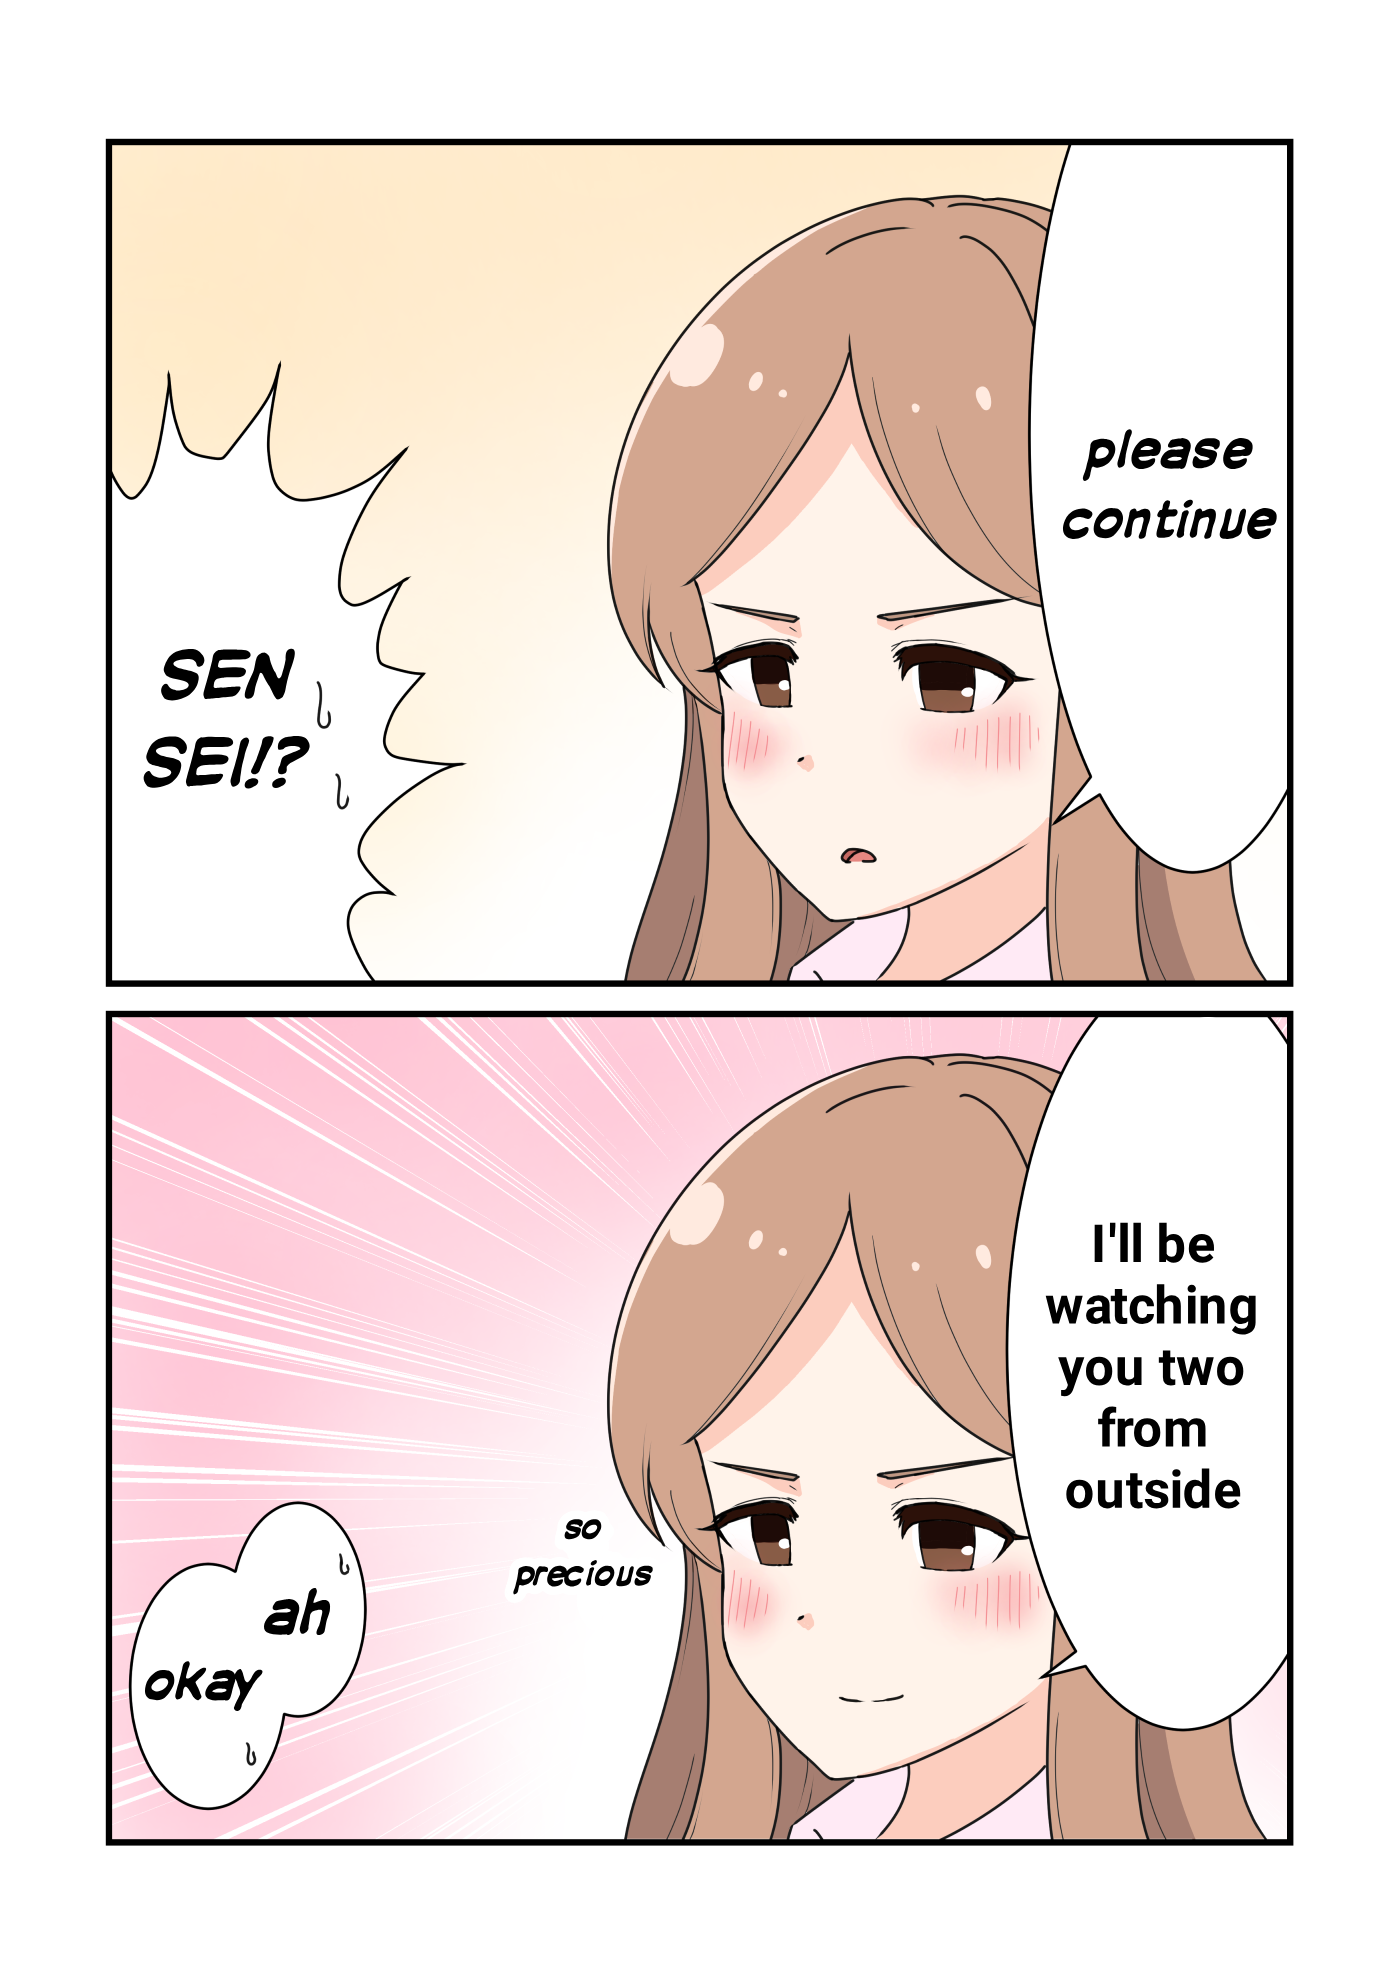 Heiwa Na Yuri Manga Series - Page 2